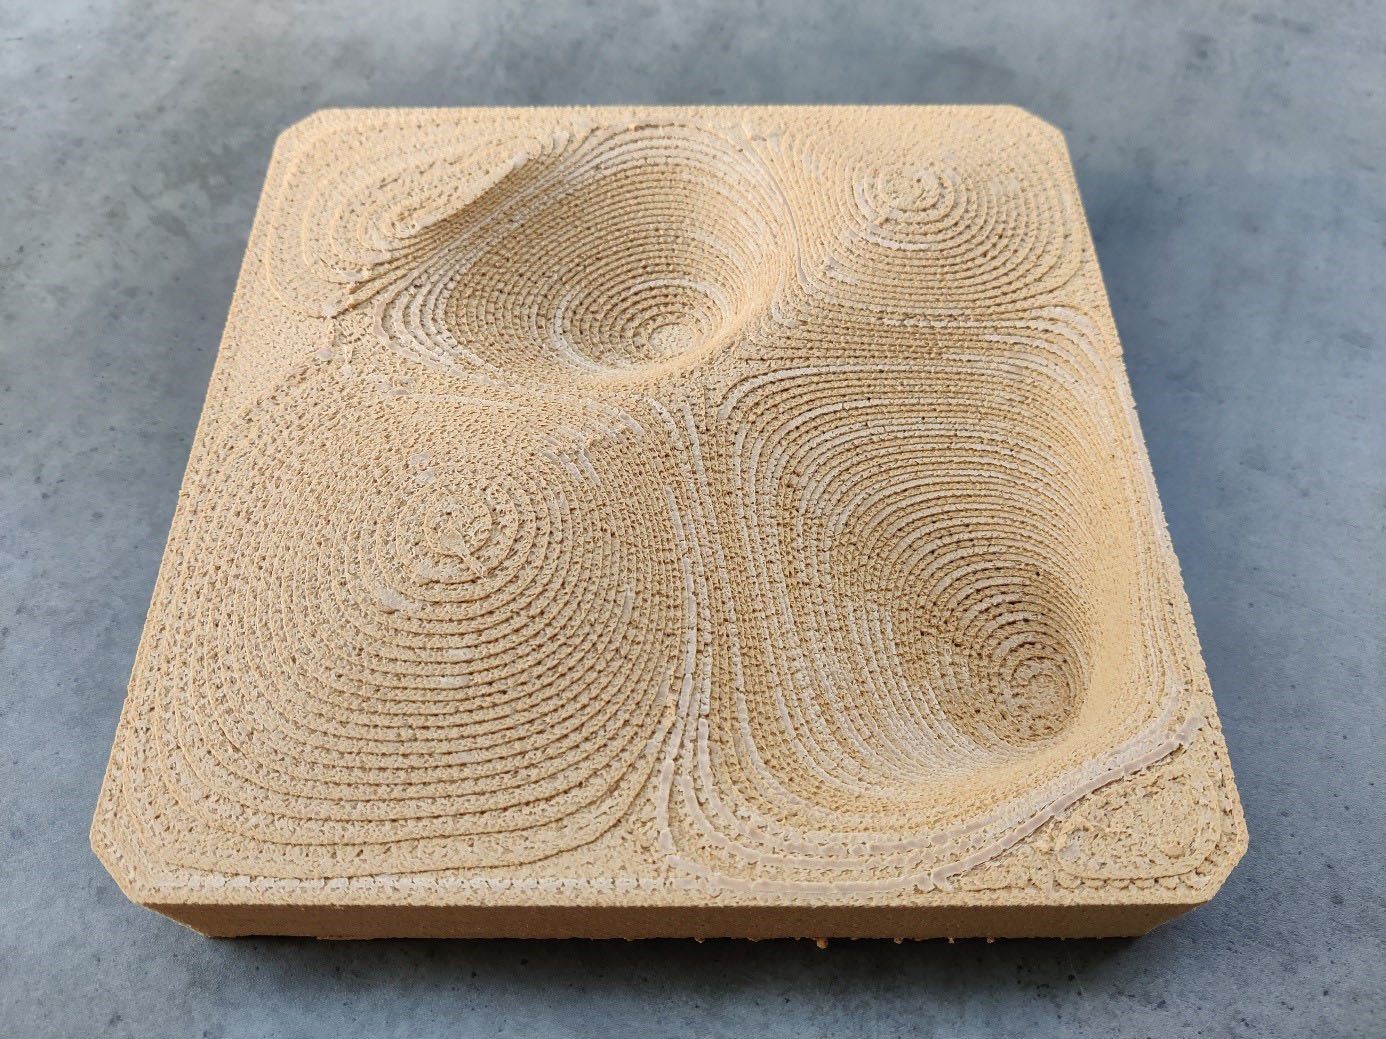 3D printed free-form tile made of wood short fiber filament